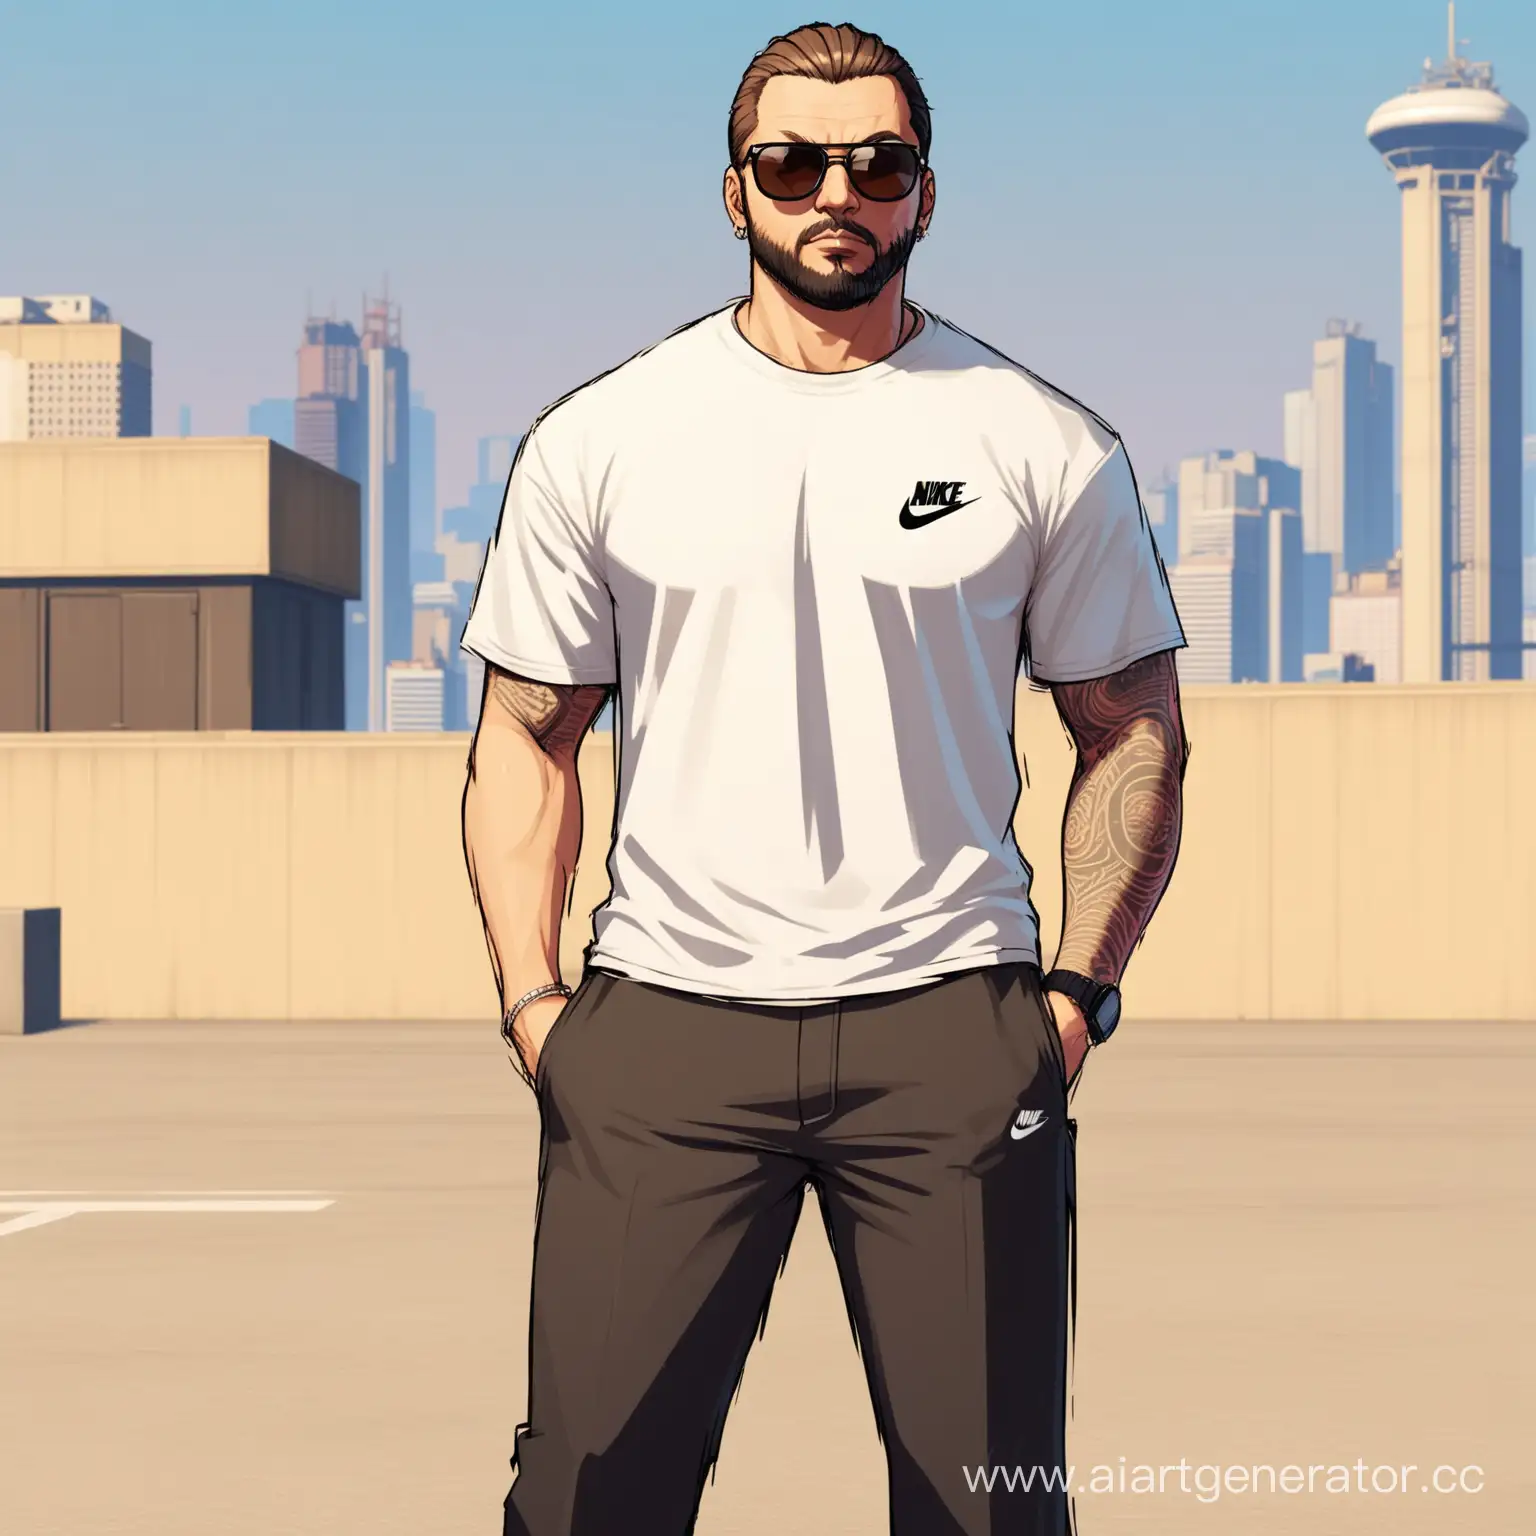 человек стоит в белой футболке nike и в кроссовках airforce в солнечных очках средняя прическа в стиле GTA среднего телосложения